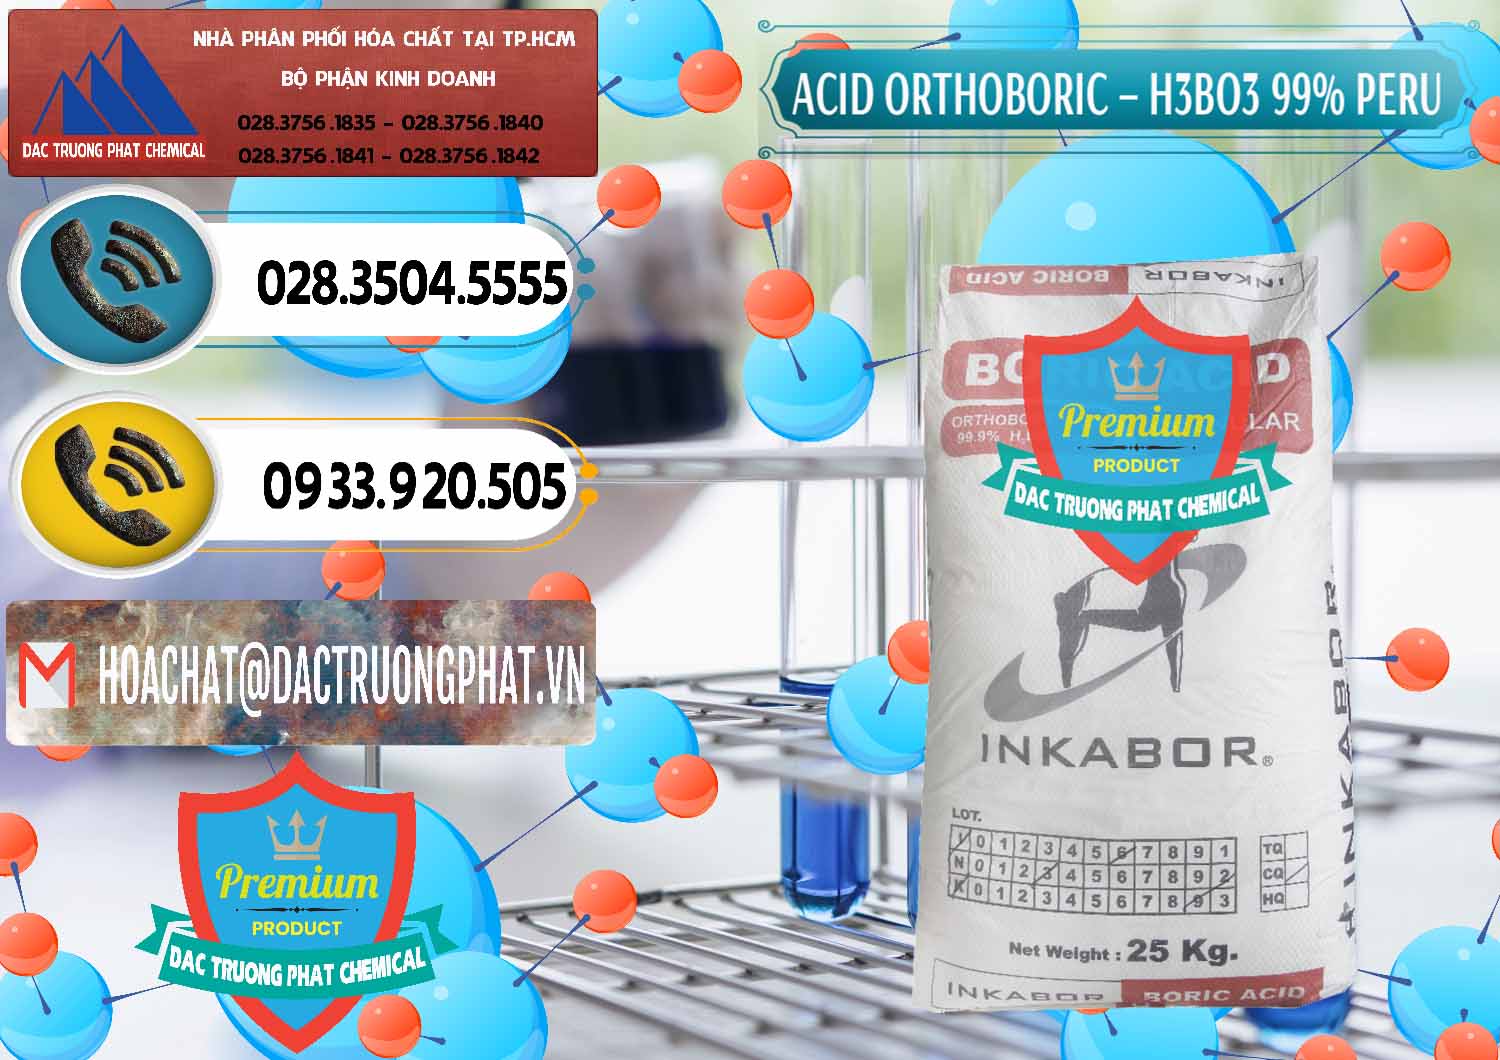 Nhà cung cấp _ bán Acid Boric – Axit Boric H3BO3 99% Inkabor Peru - 0280 - Cty phân phối & cung cấp hóa chất tại TP.HCM - hoachatdetnhuom.vn